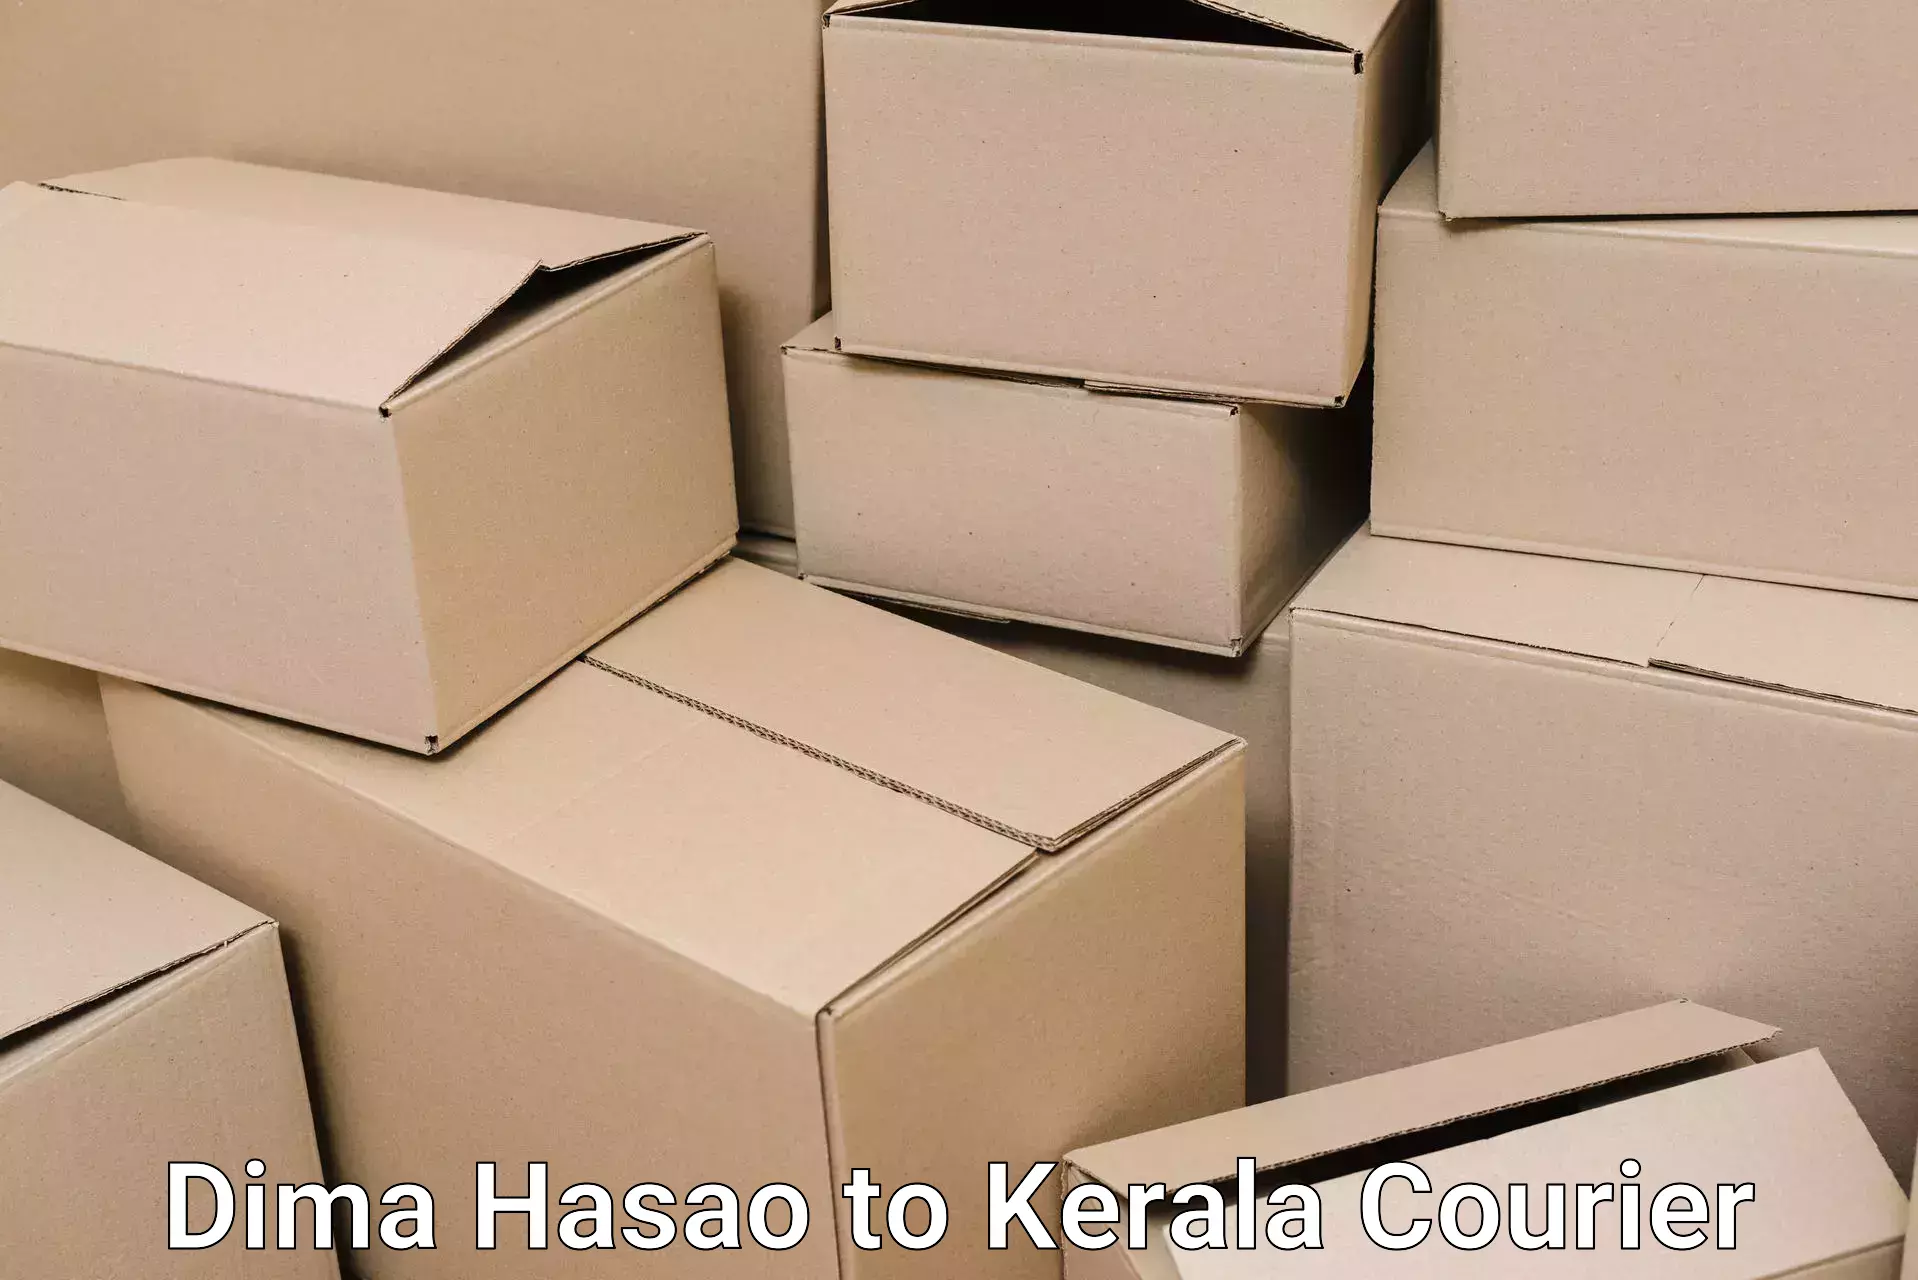 Efficient moving company Dima Hasao to Kochi